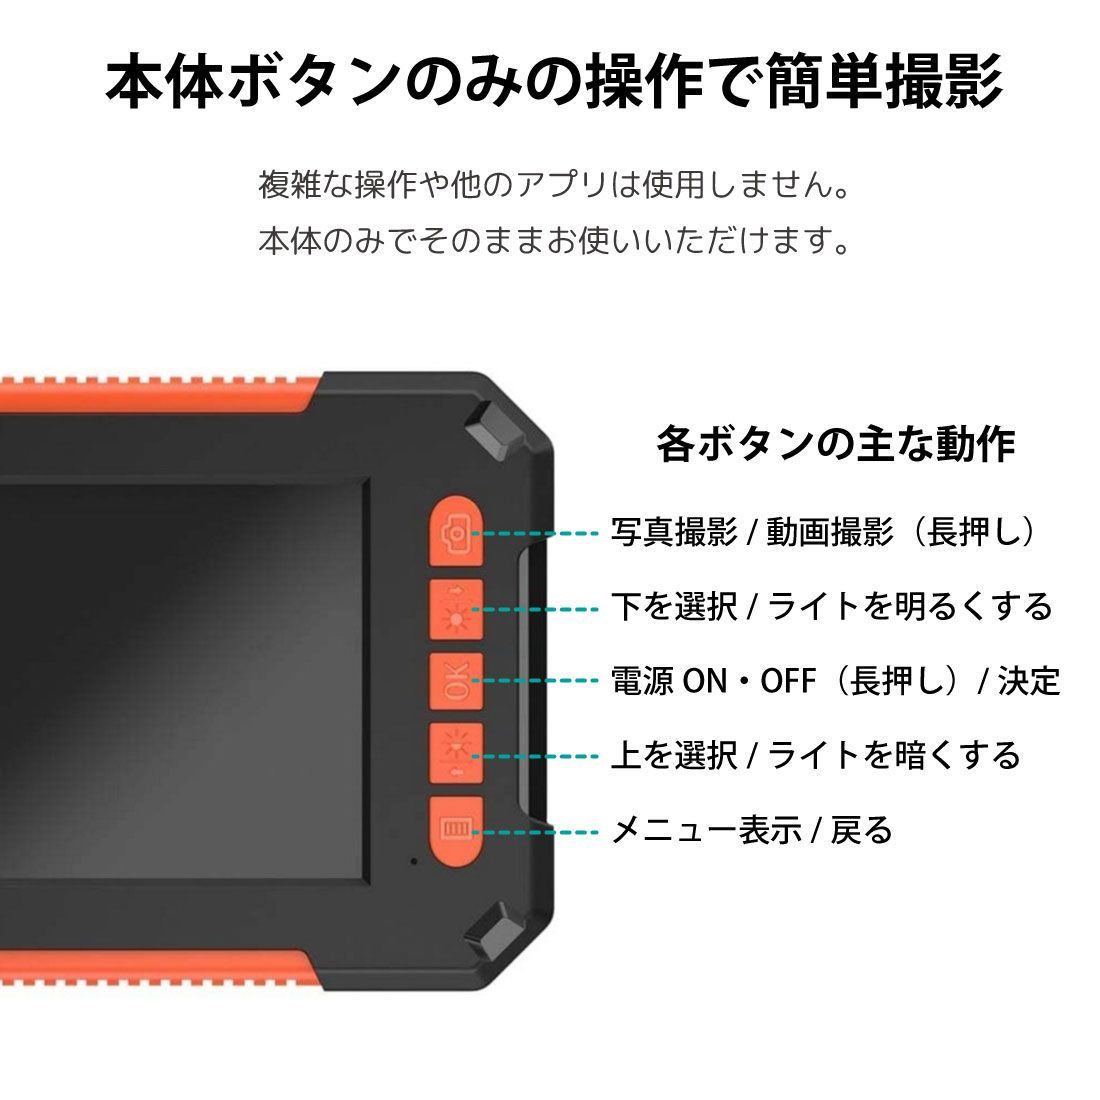 USB ファイバースコープ 内視鏡カメラ 200万画素 1080P高画質 11か国語 8つLEDライト付き 暗闇撮影内視鏡 IP67防水